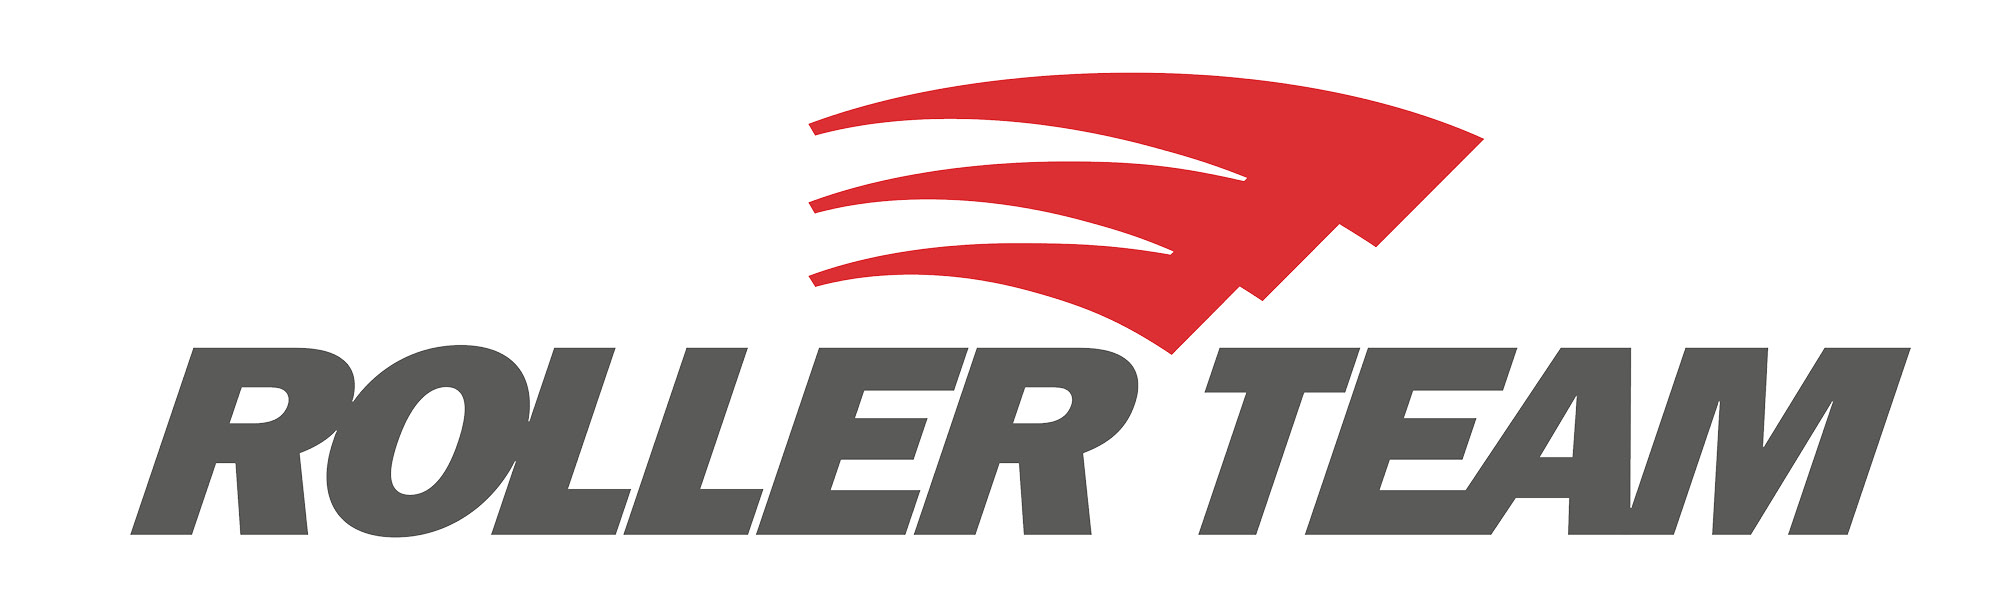 Roller Team RT logo